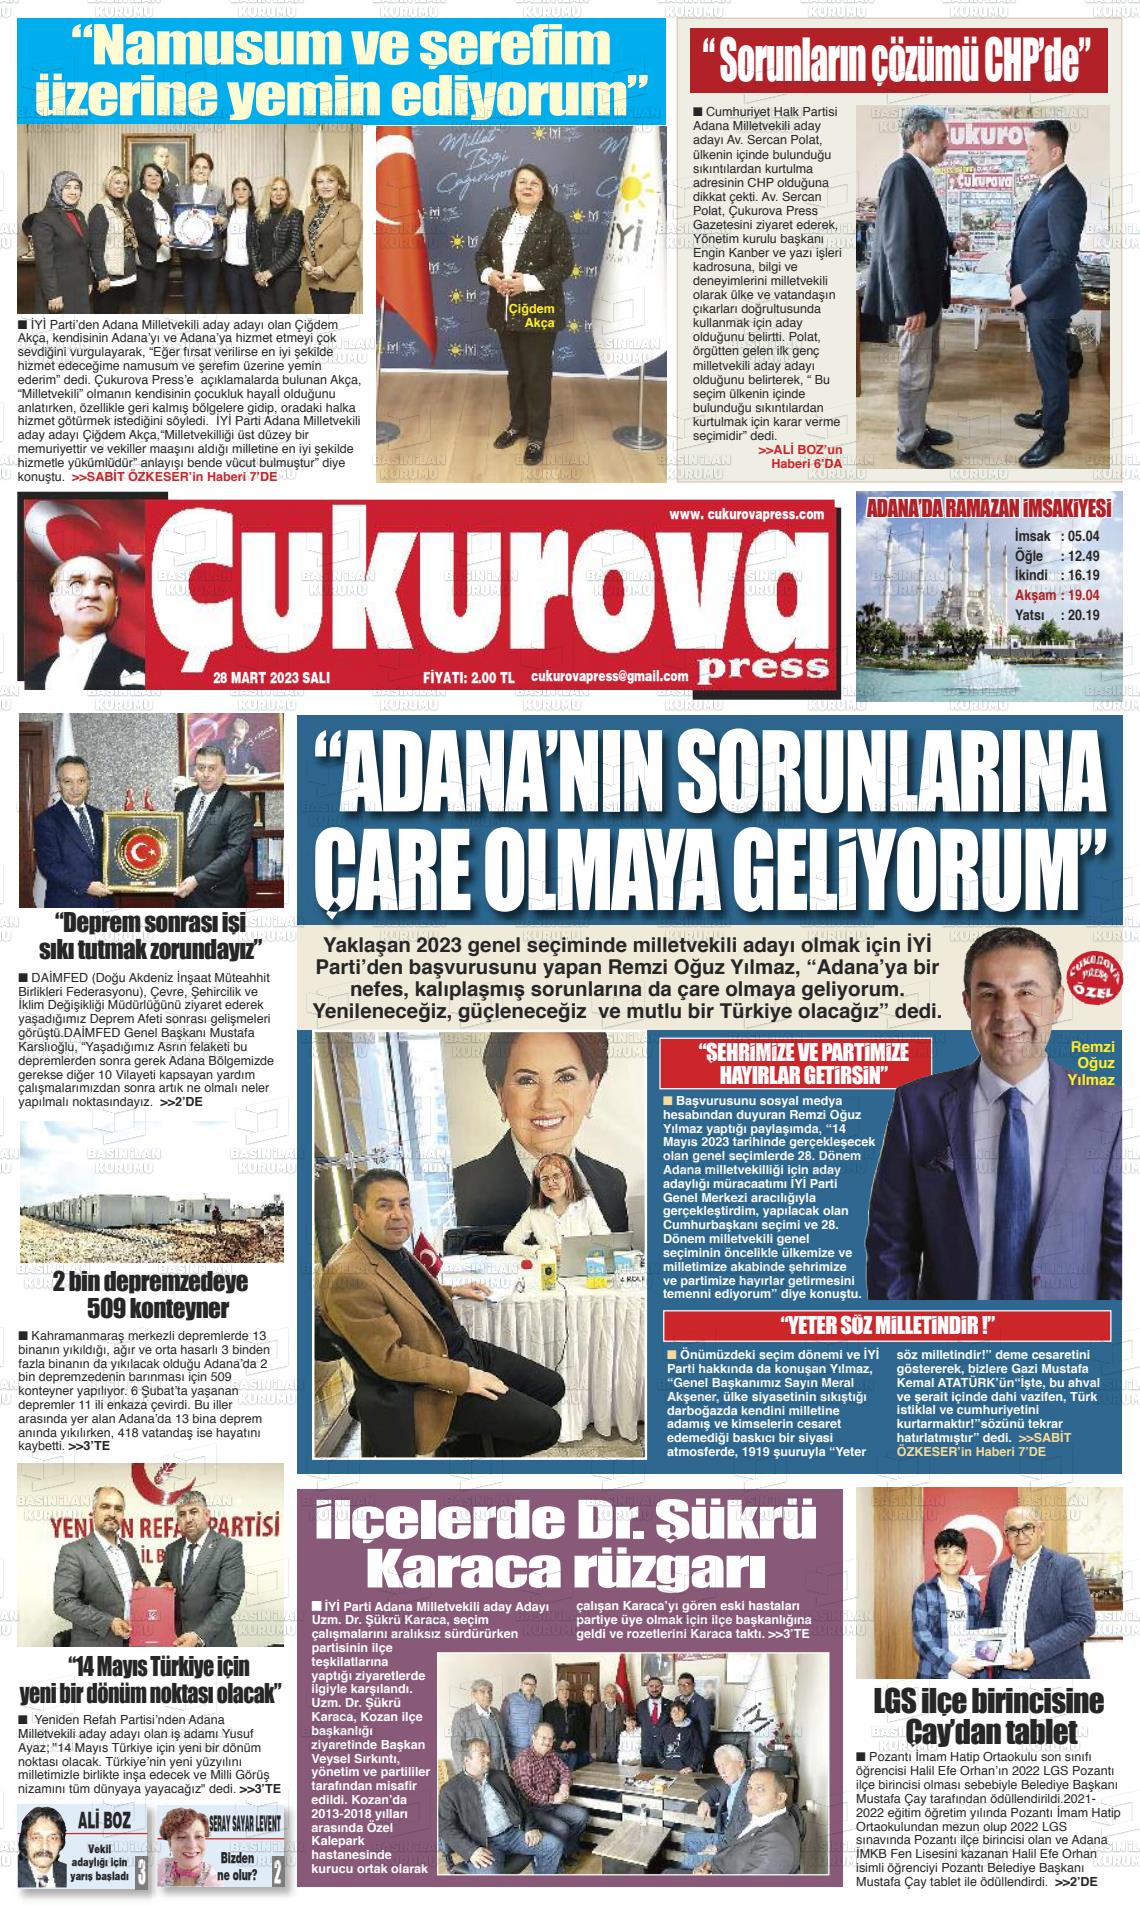 28 Mart 2023 Çukurova Press Gazete Manşeti